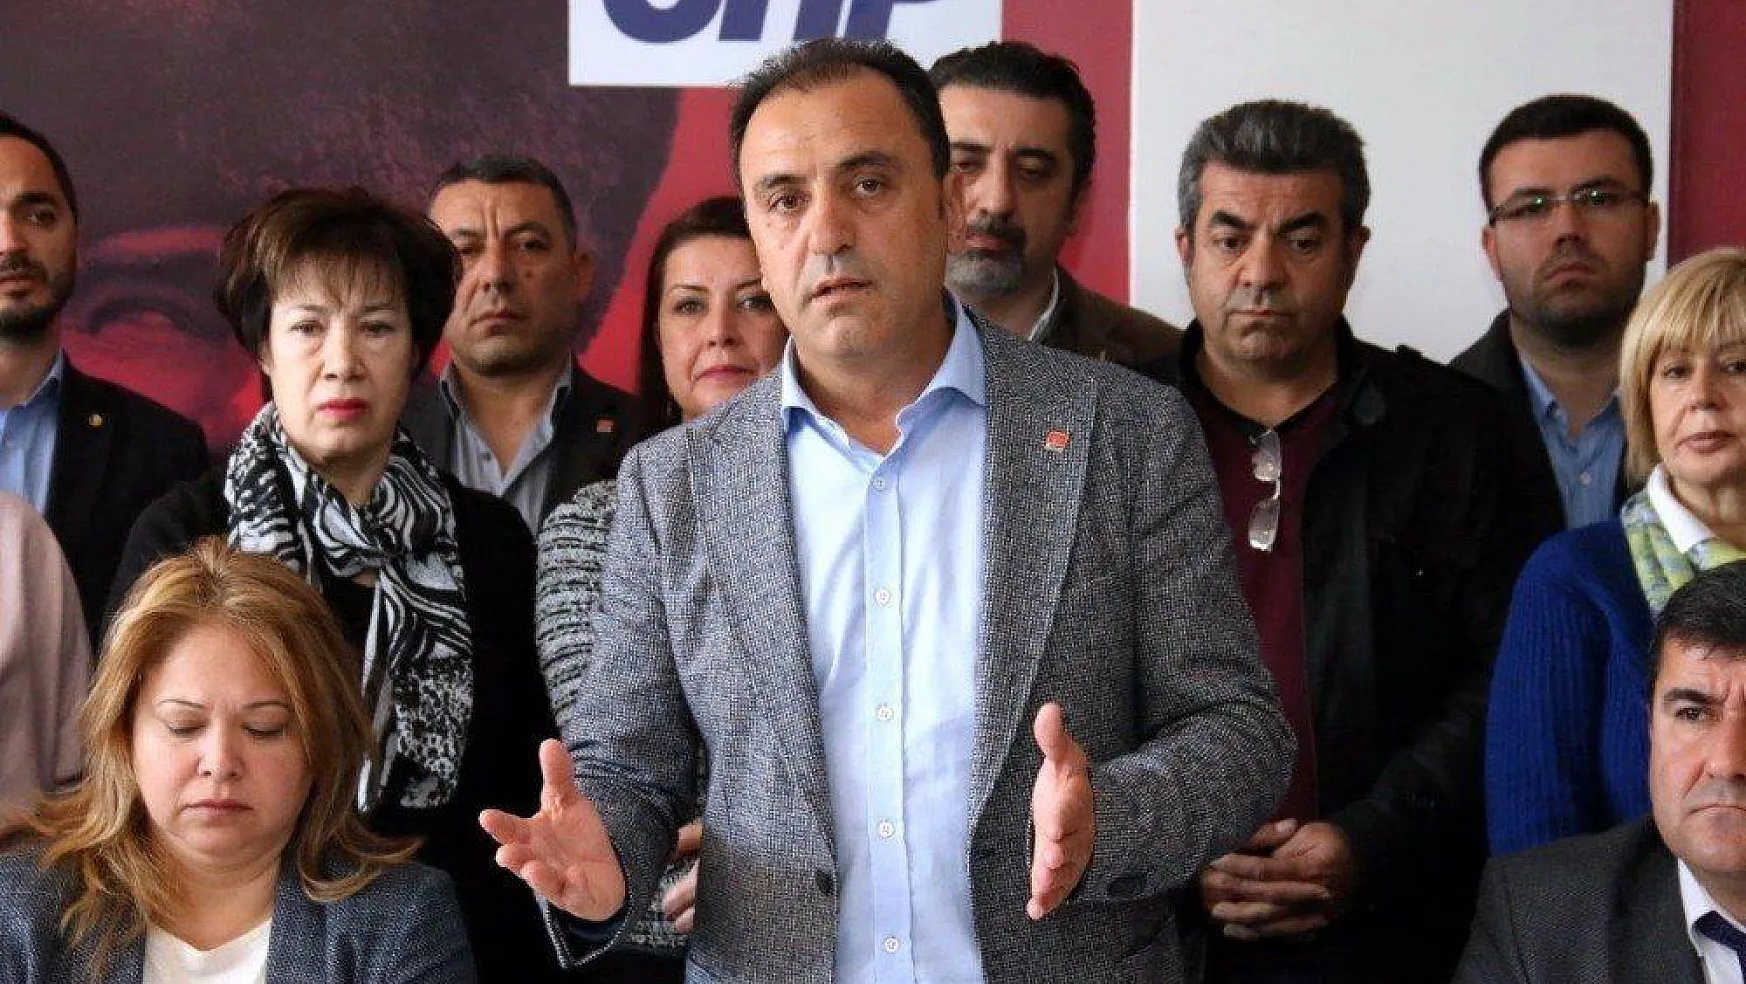 Başkan adaylığı düşürülen CHP'li Saruhan: 'Davamızın peşinde sonuna kadar mücadele edeceğiz'